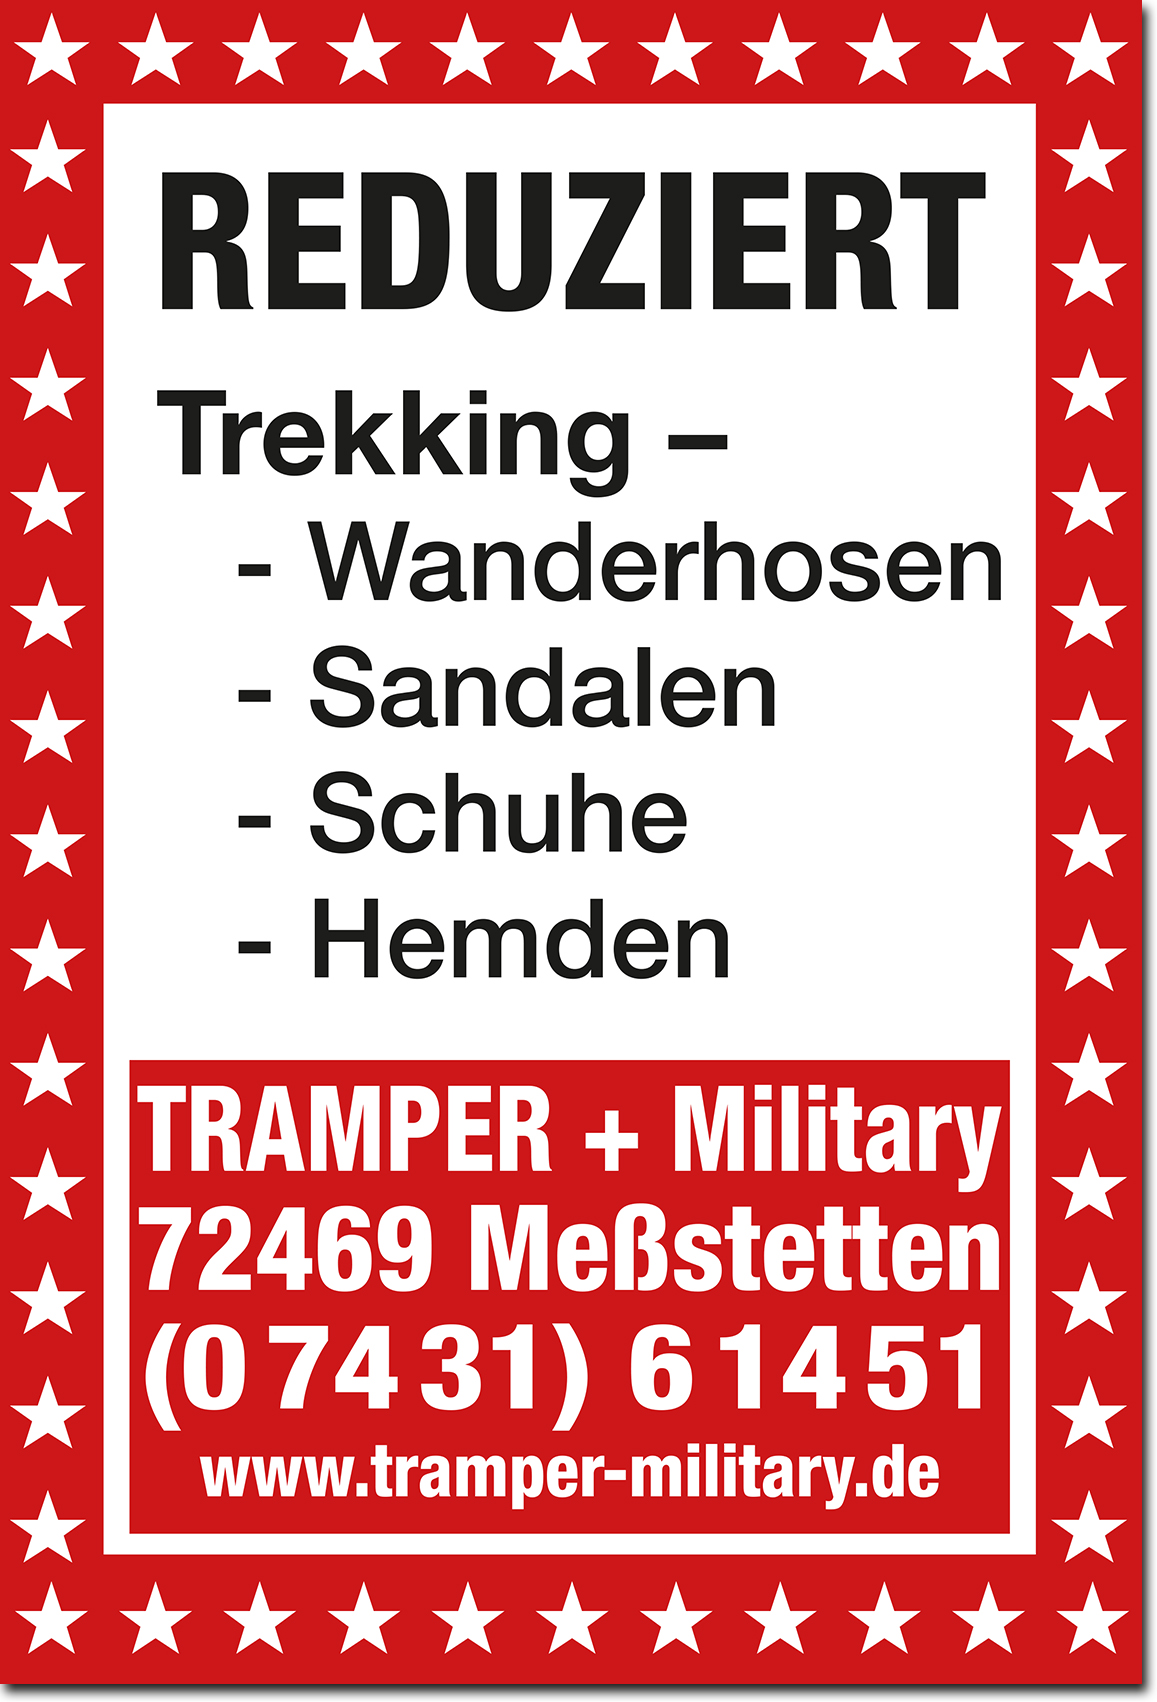 Tramper + Military